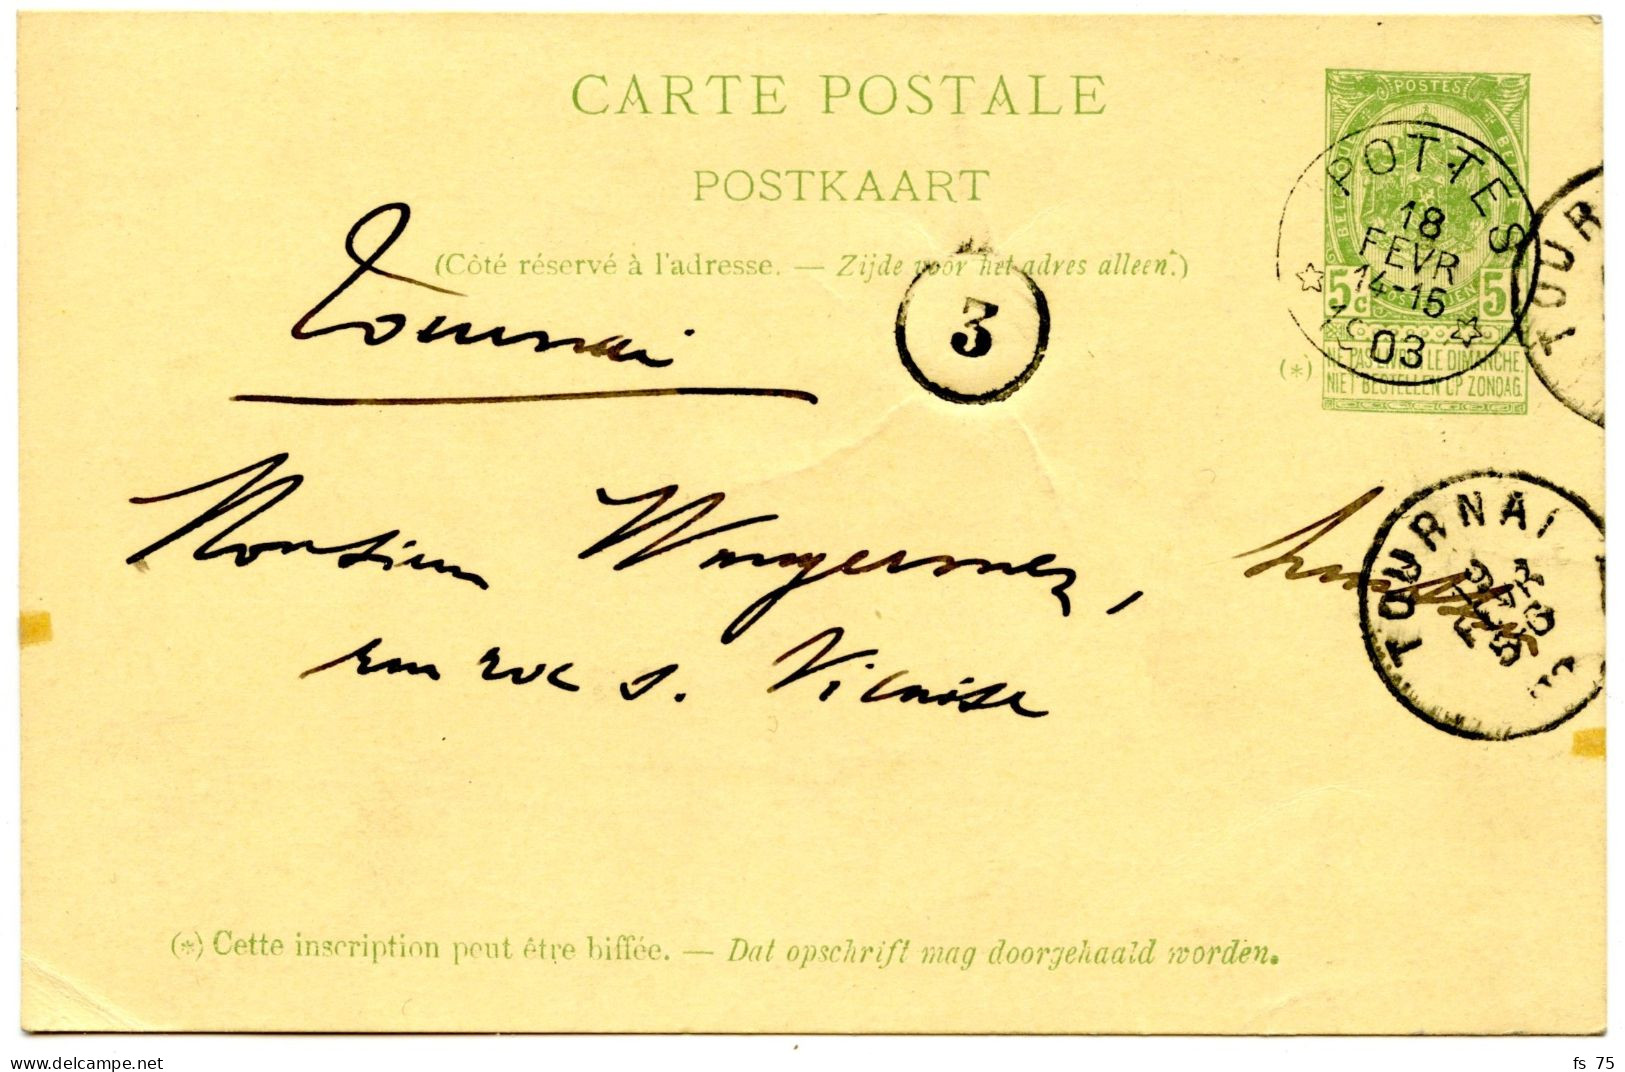 BELGIQUE - SIMPLE CERCLE RELAIS A ETOILES POTTES SUR ENTIER CARTE POSTALE 10C ARMOIRIES, 1903 - Postmarks With Stars